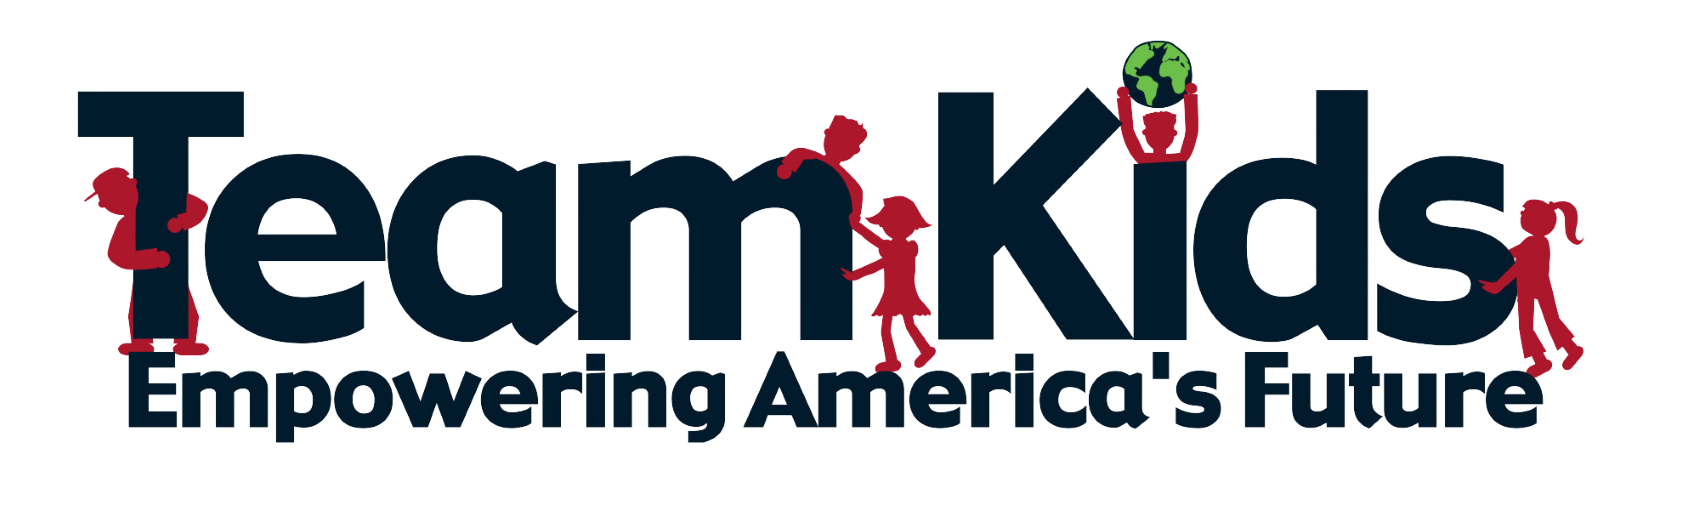 Team-Kids-Logo-1.png